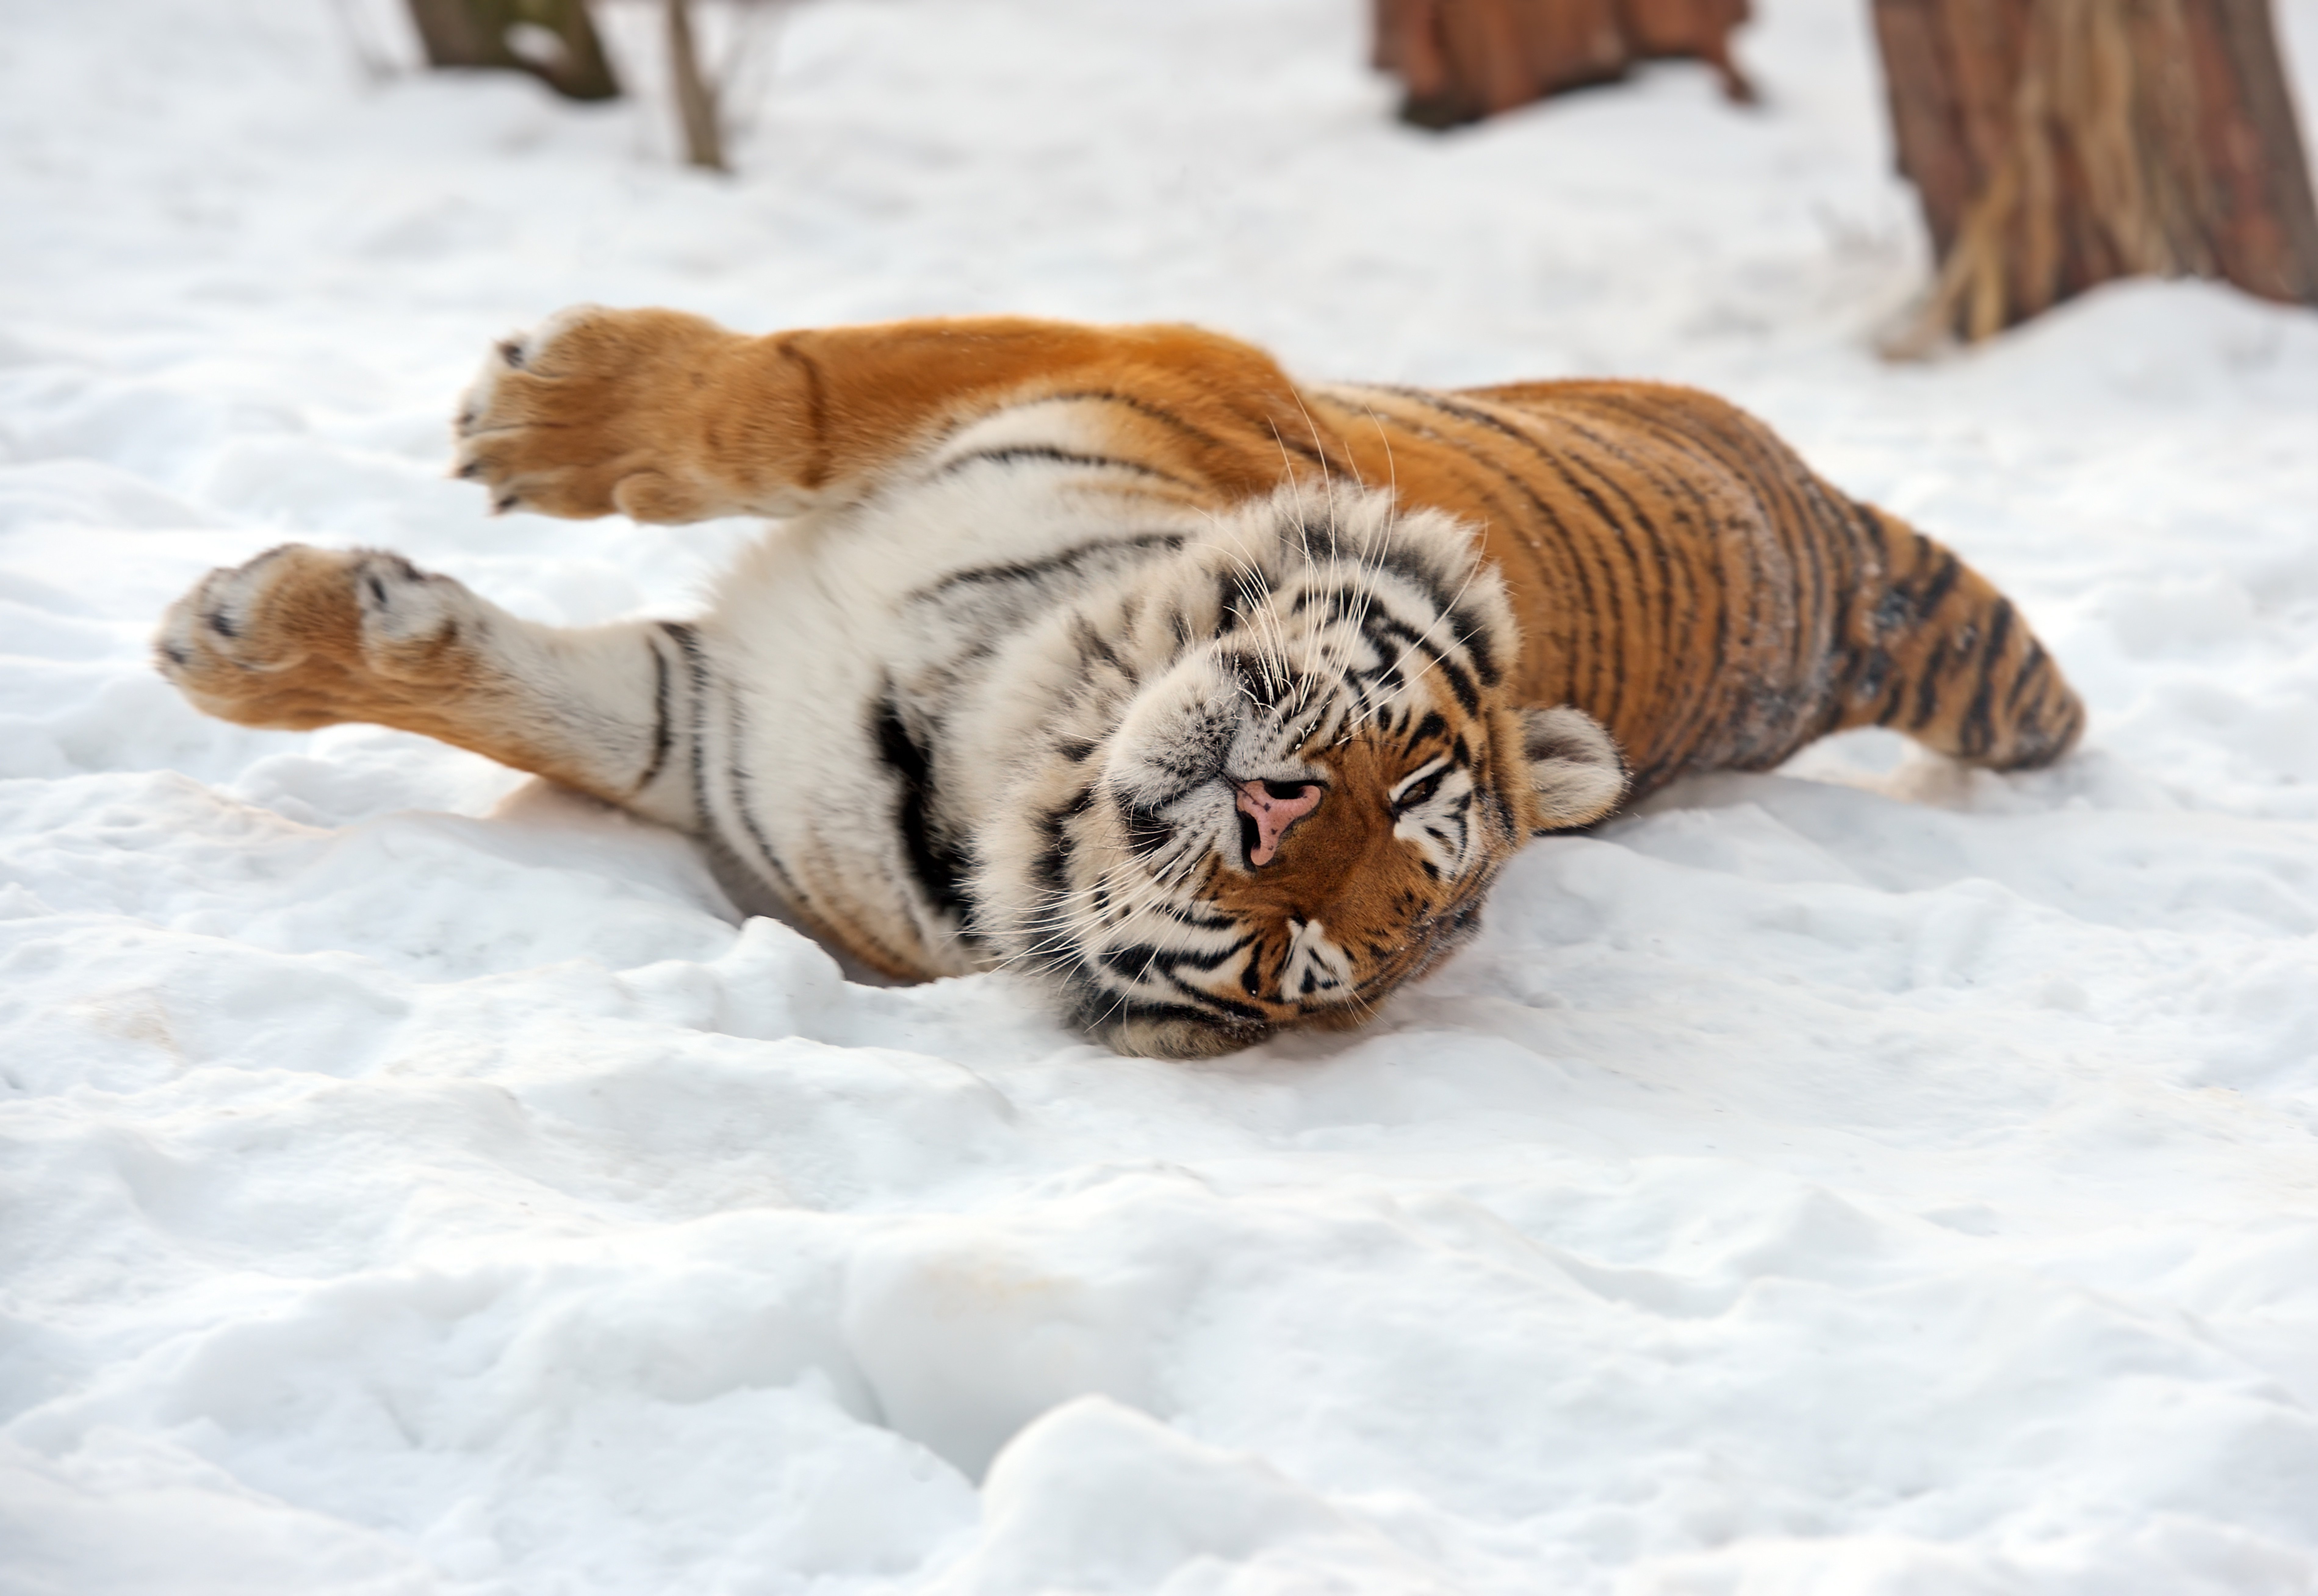 big, Cats, Tiger, Snow, Animals, Winter Wallpaper